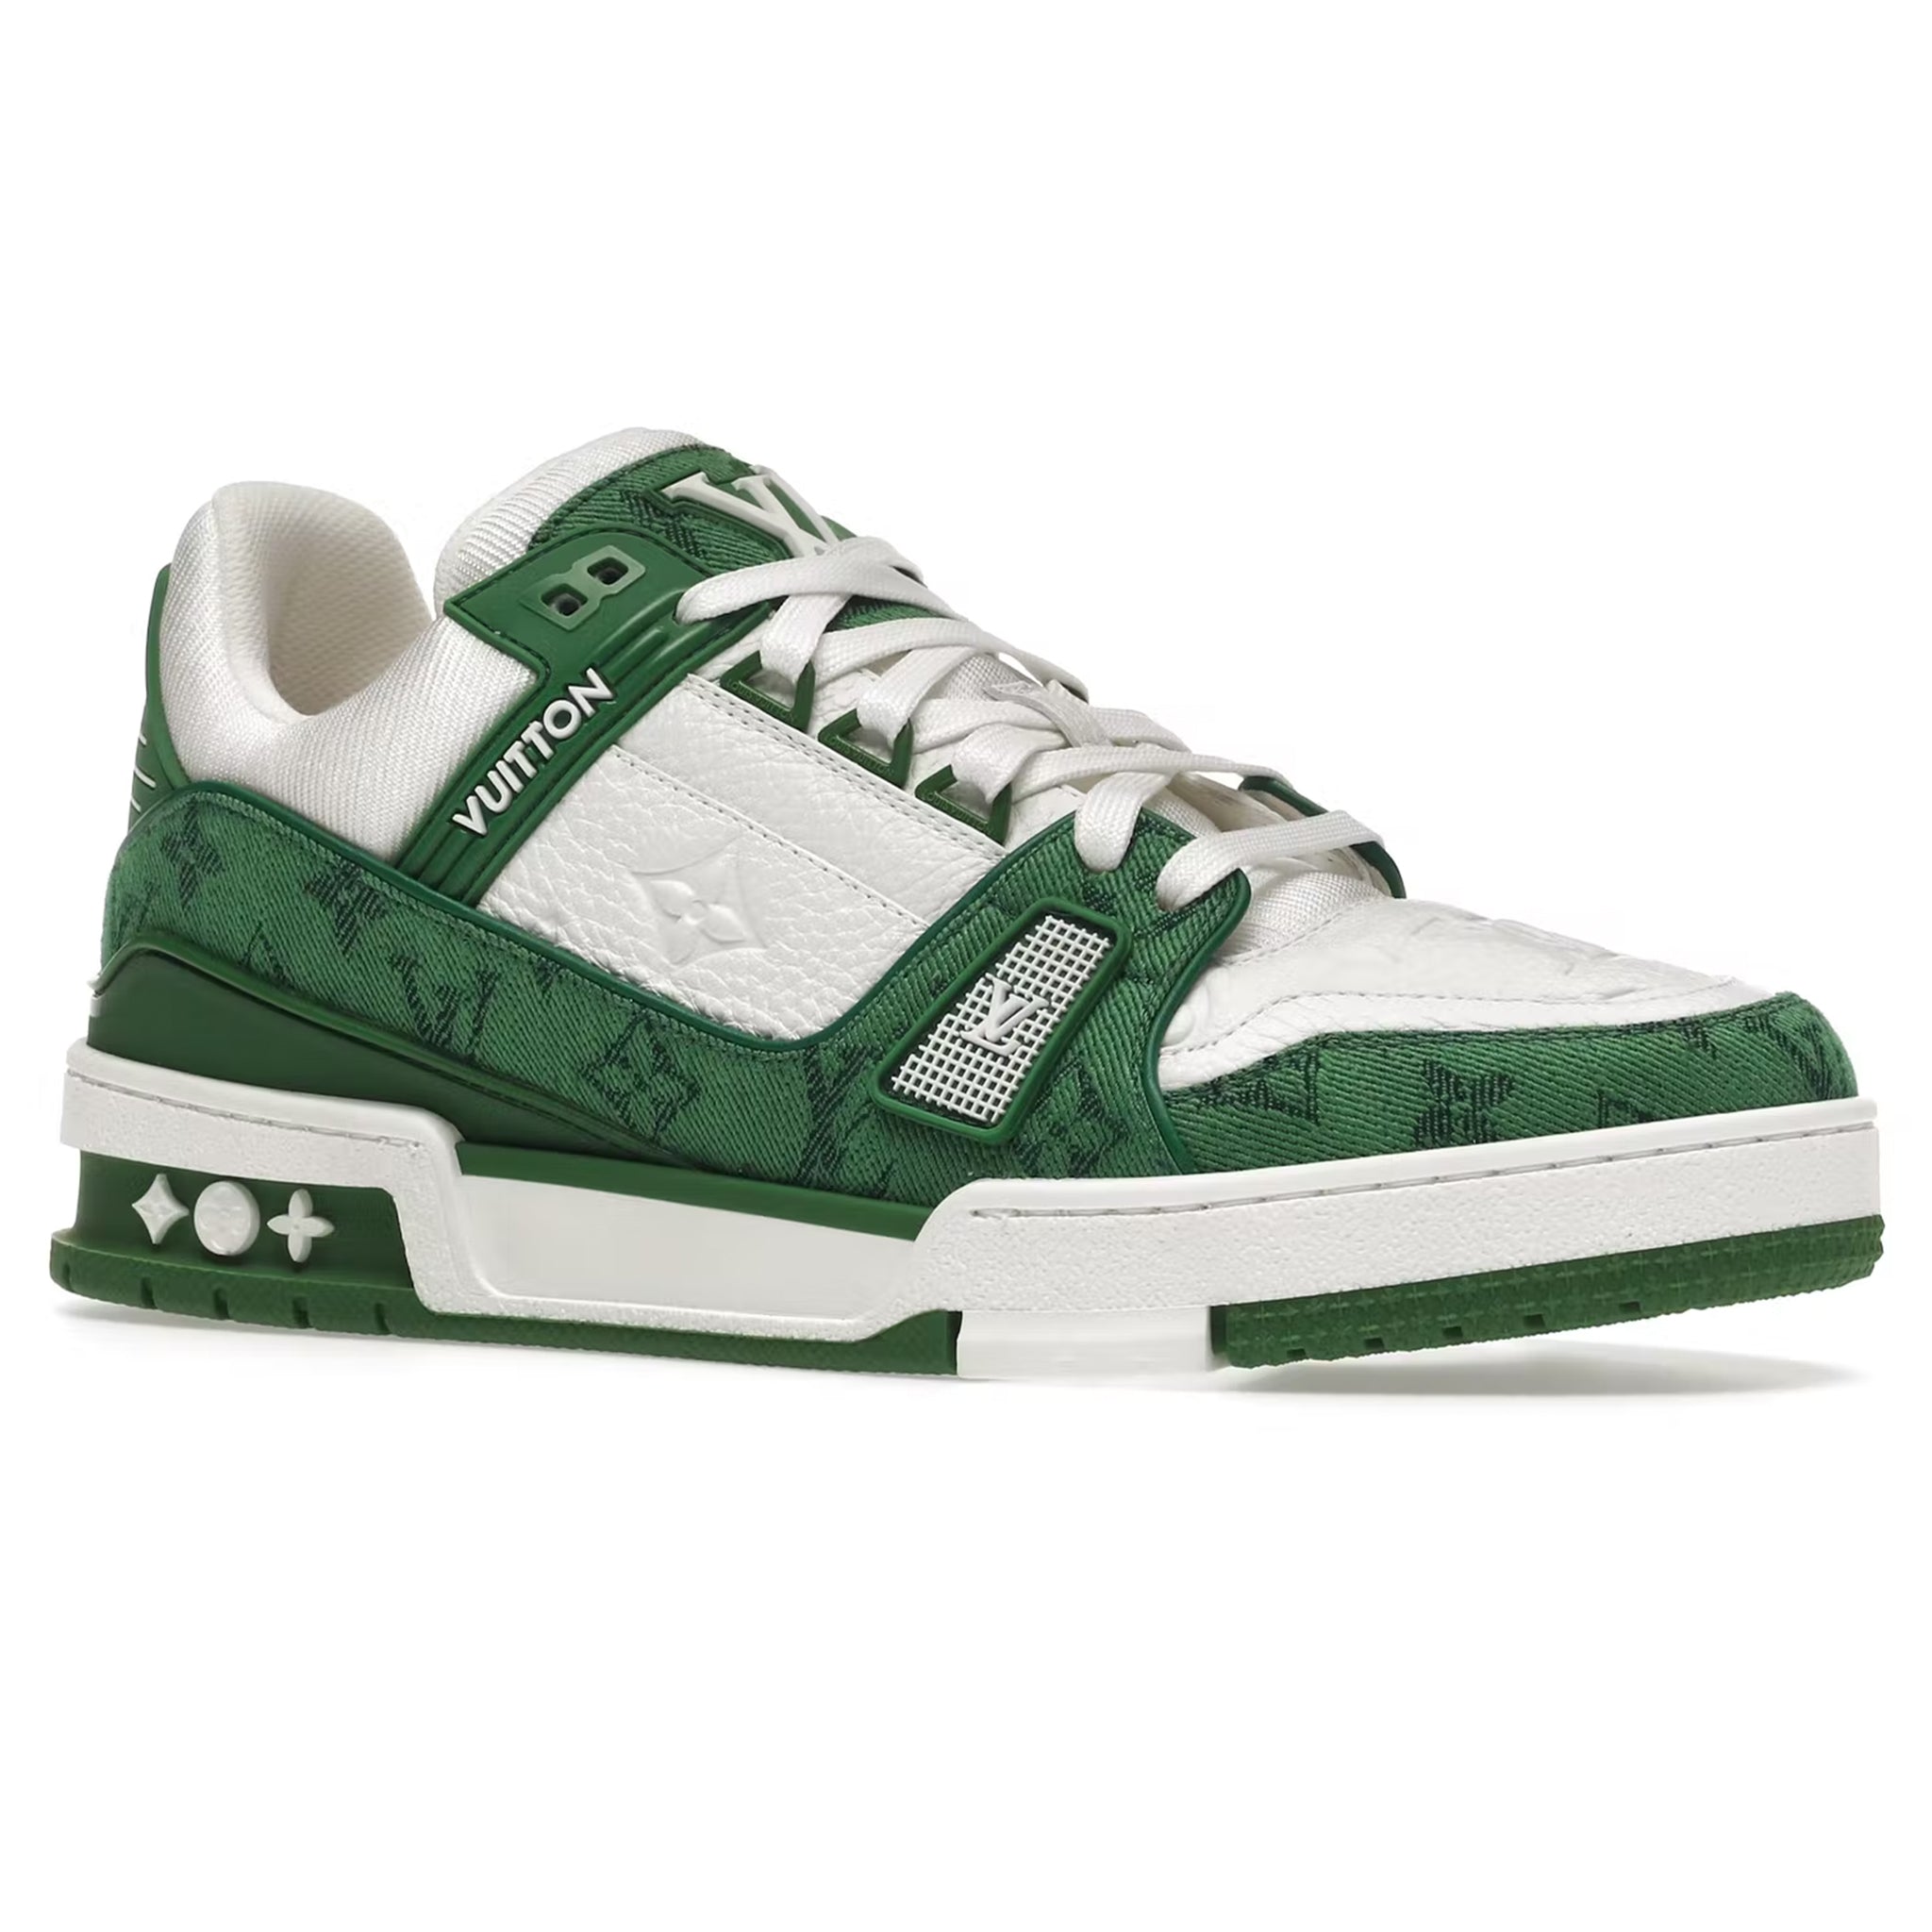 Louis Vuitton LV Skate Sneaker Green. Size 08.0